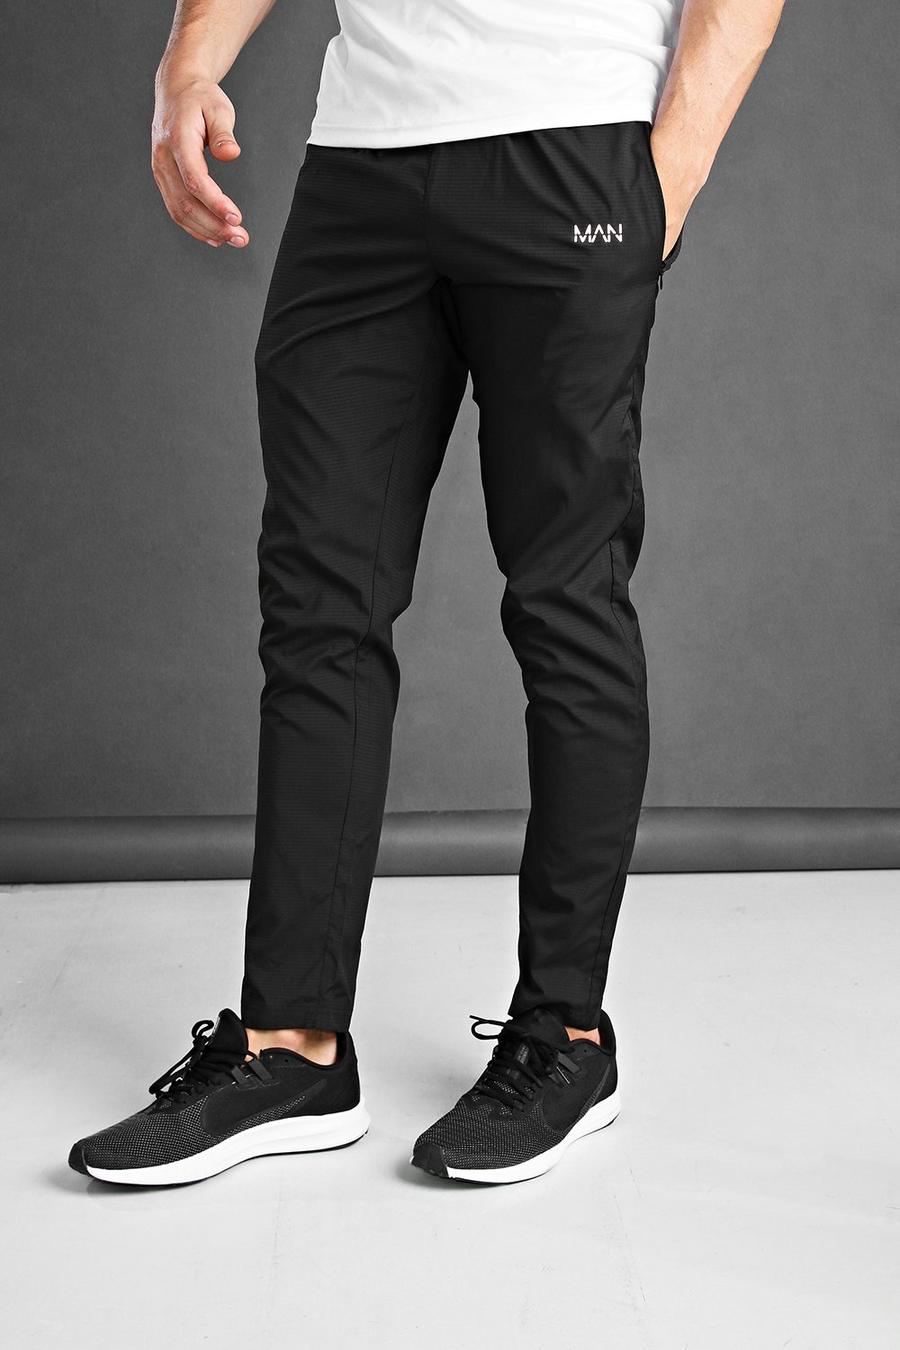 שחור nero מכנסי ריצה ארוגים בגזרת סקיני לאימונים עם כיתוב MAN image number 1